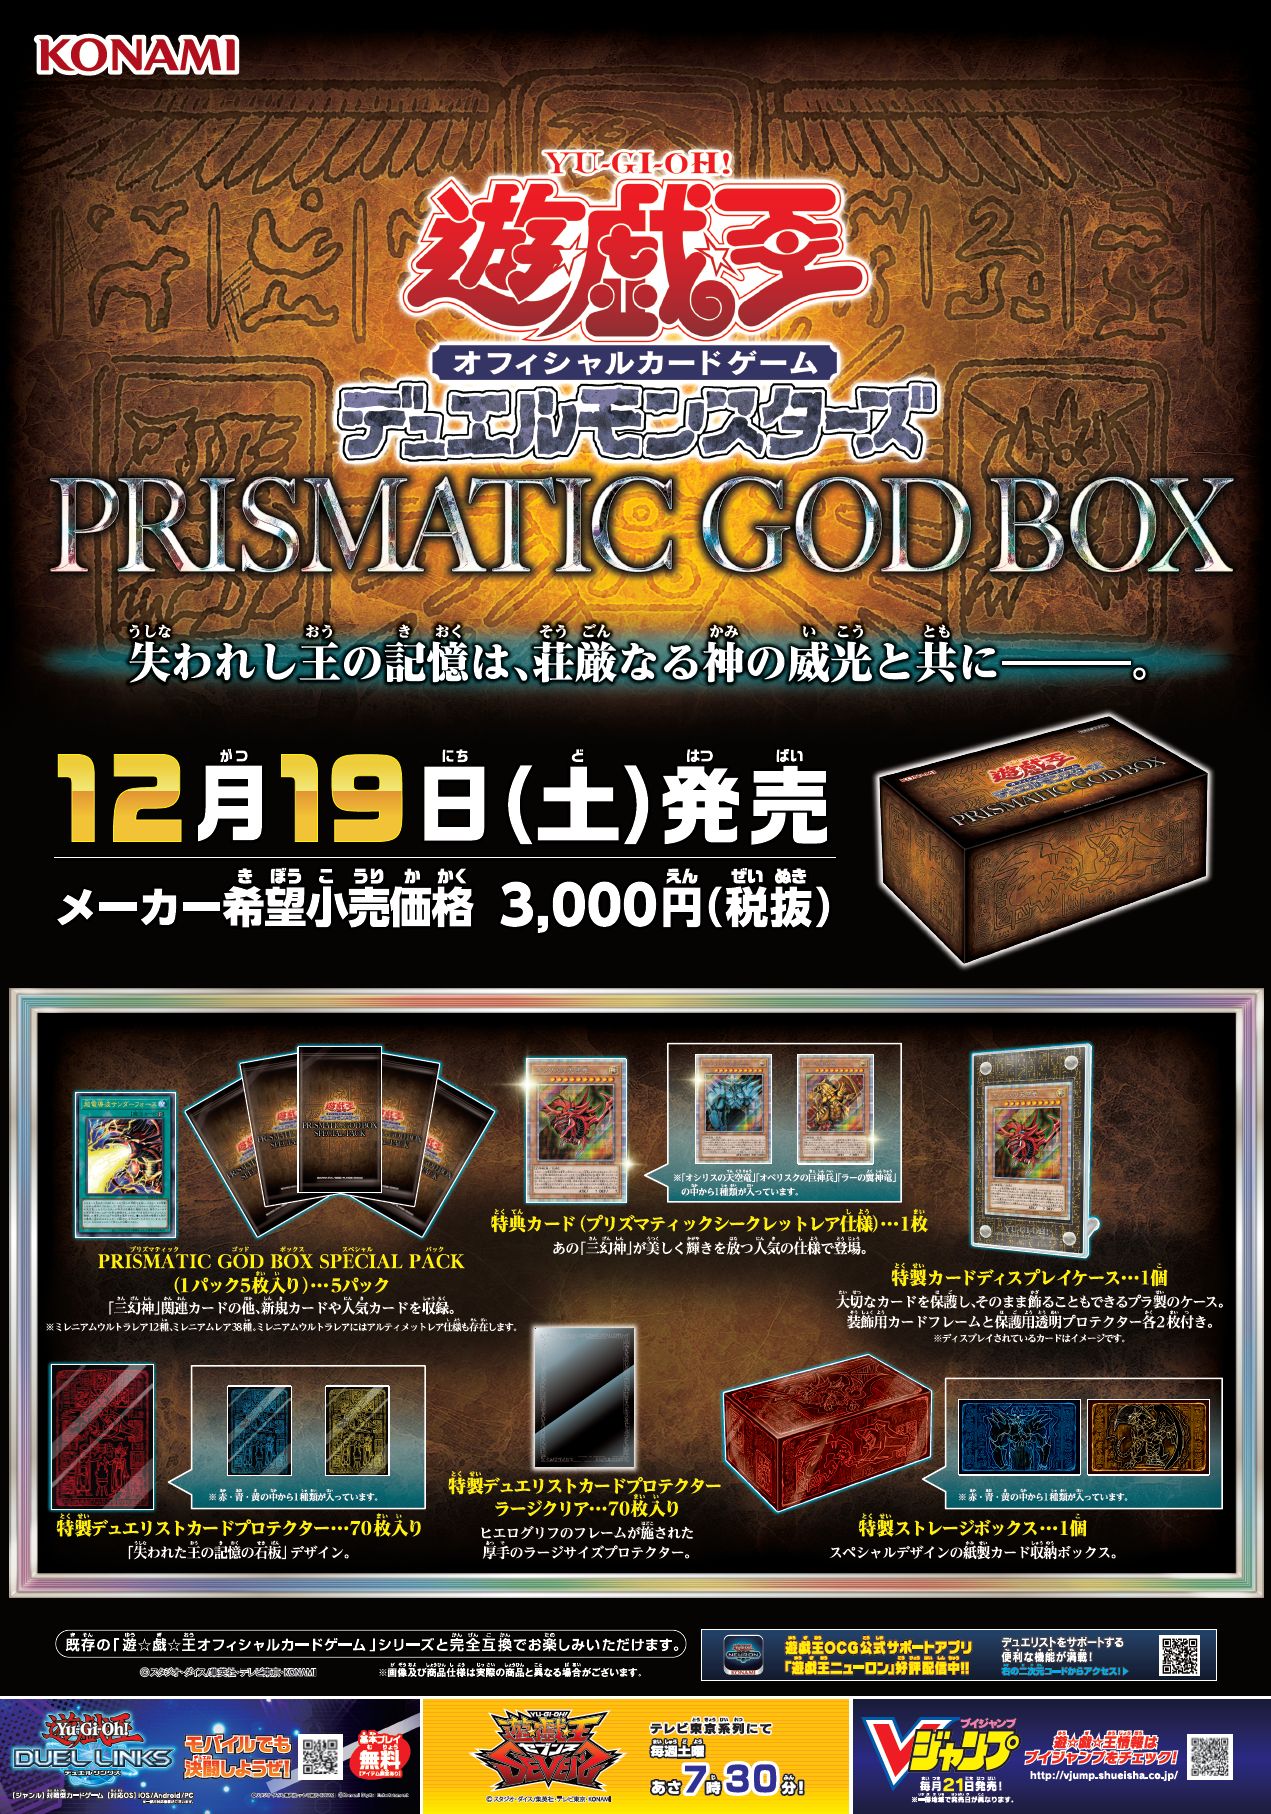 遊戯王OCG】「PRISMATIC GOD BOX」本日発売 定価の倍以上で買取する 